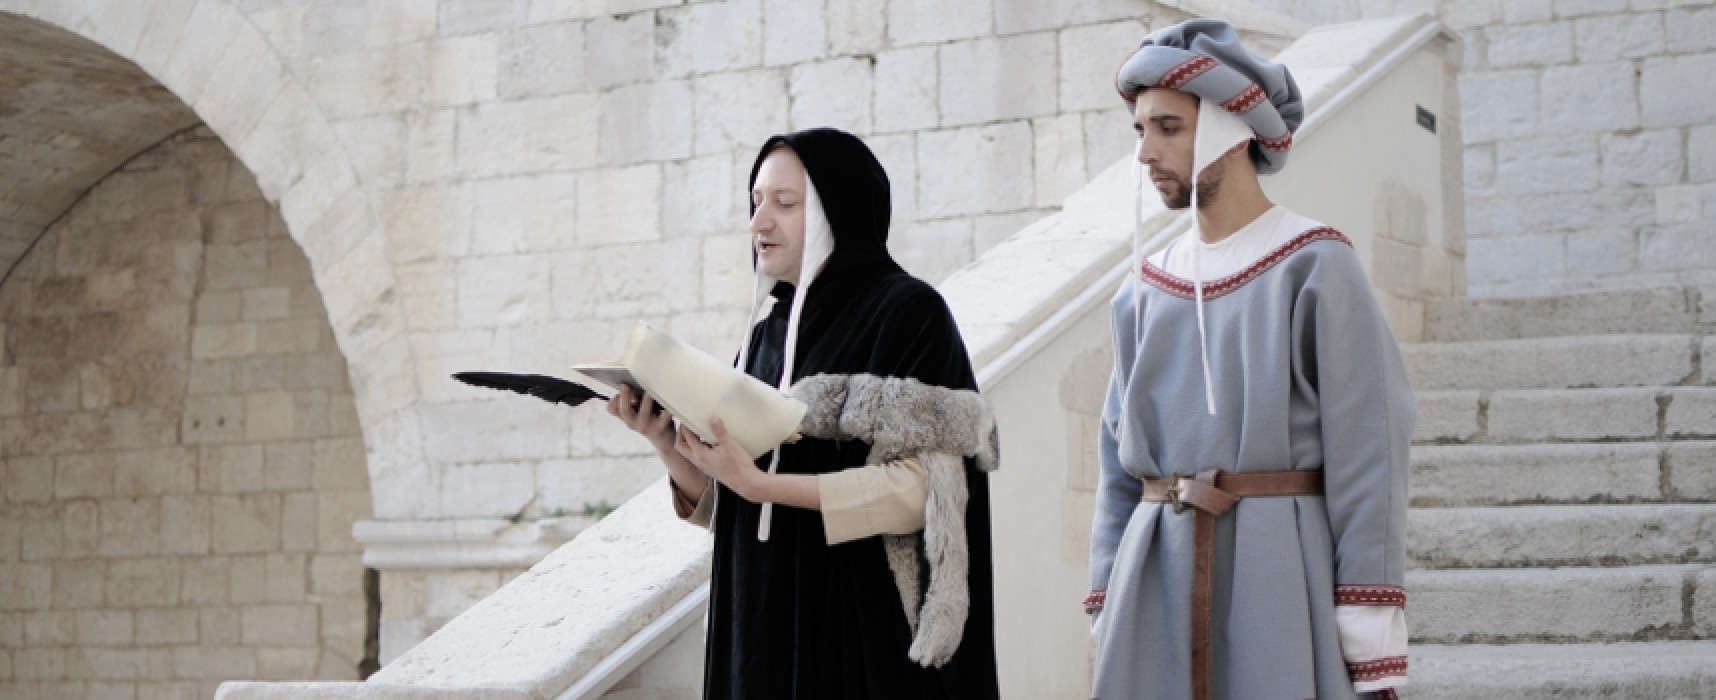 Gianluigi Belsito protagonista a Corato con il suo “Federico II e il Sogno della Conoscenza”